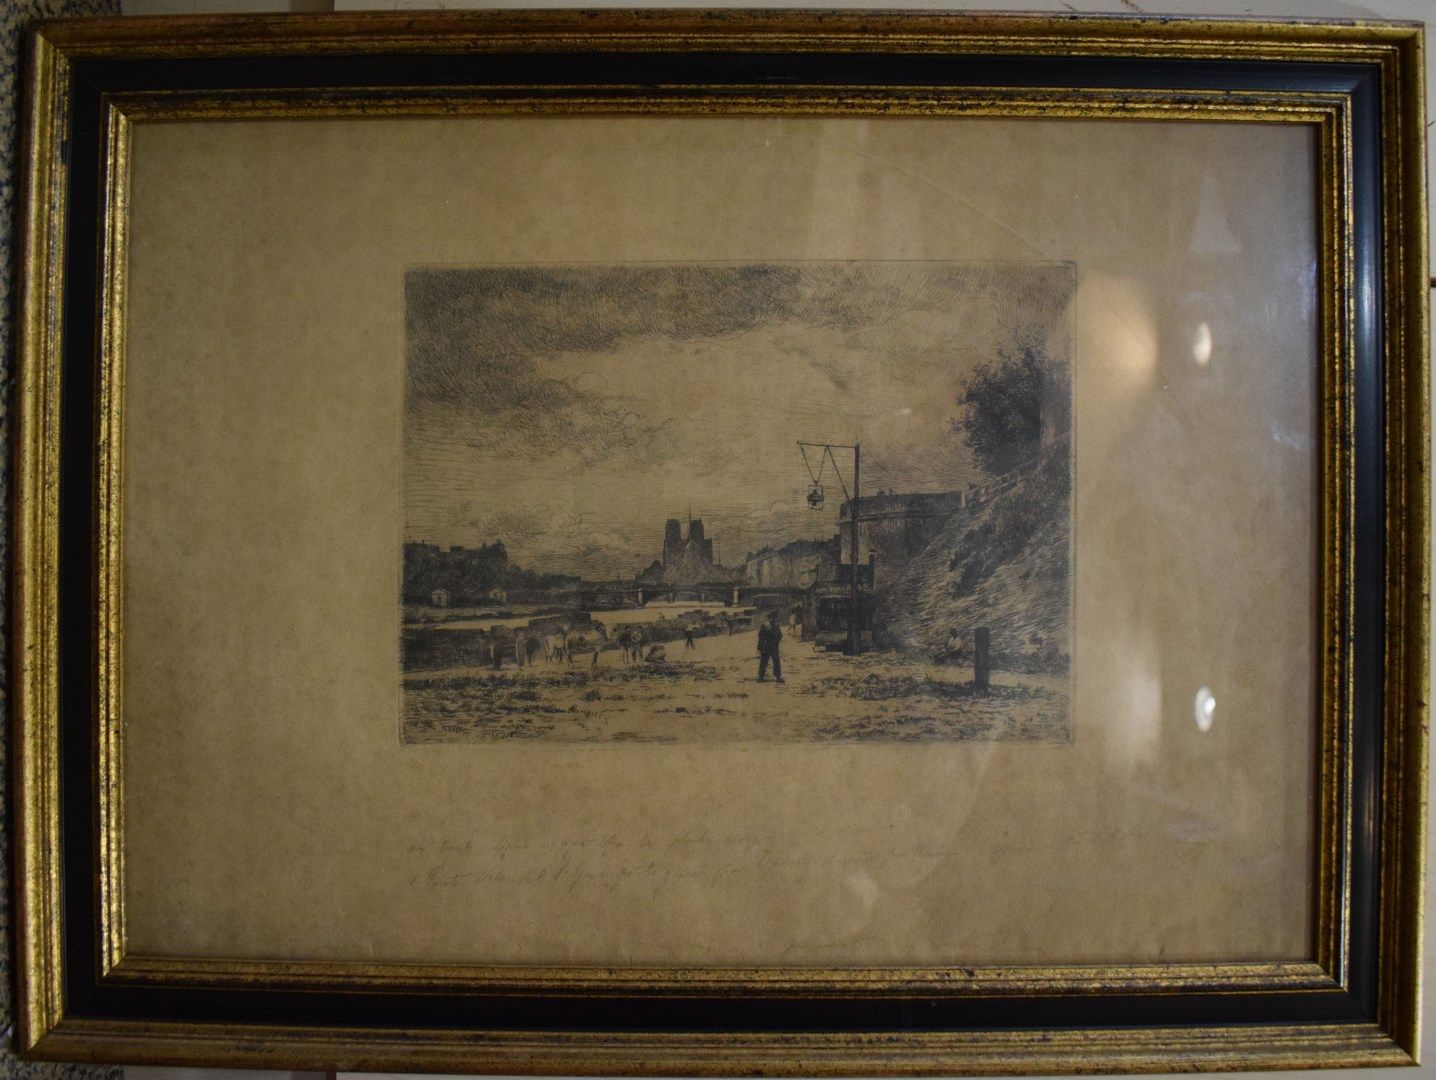 Null 勒平-斯坦尼斯拉 (1835-1892)

"塞纳河的边缘"。

未署名的雕刻品

用铅笔做的注释。

35x49厘米

点蚀和中暑